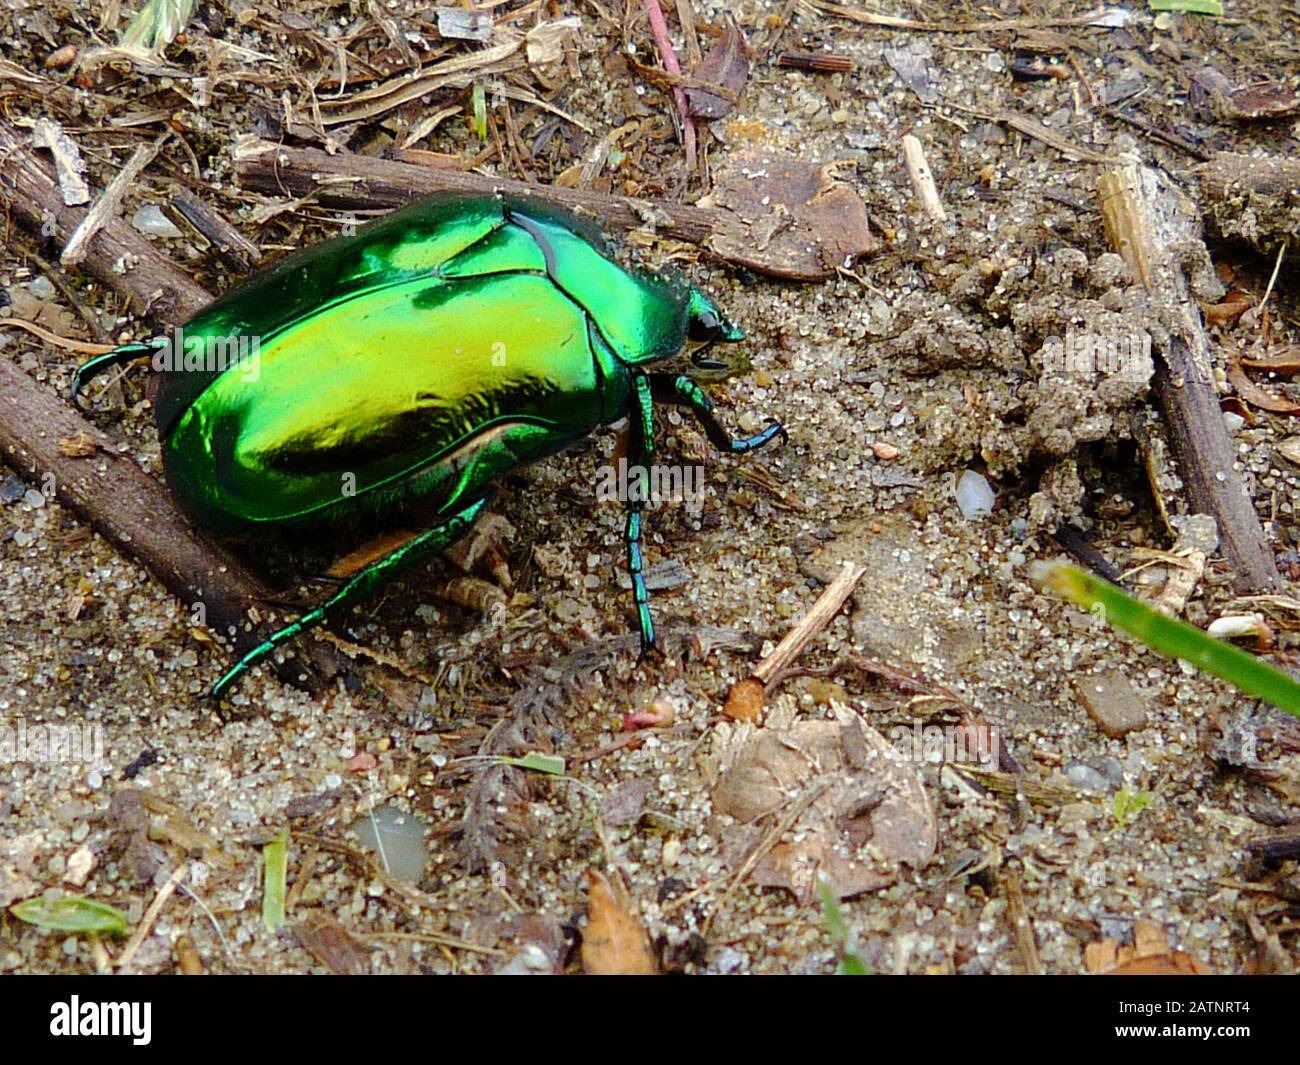 Cetonia aurata, genannt Rosenkafer oder grüner Rosenkratzer. Blau, Grün und Gold Farbe europäische Käfermakro. Glänzende Goldreflexionen. Bug-Nahaufnahme. Stockfoto